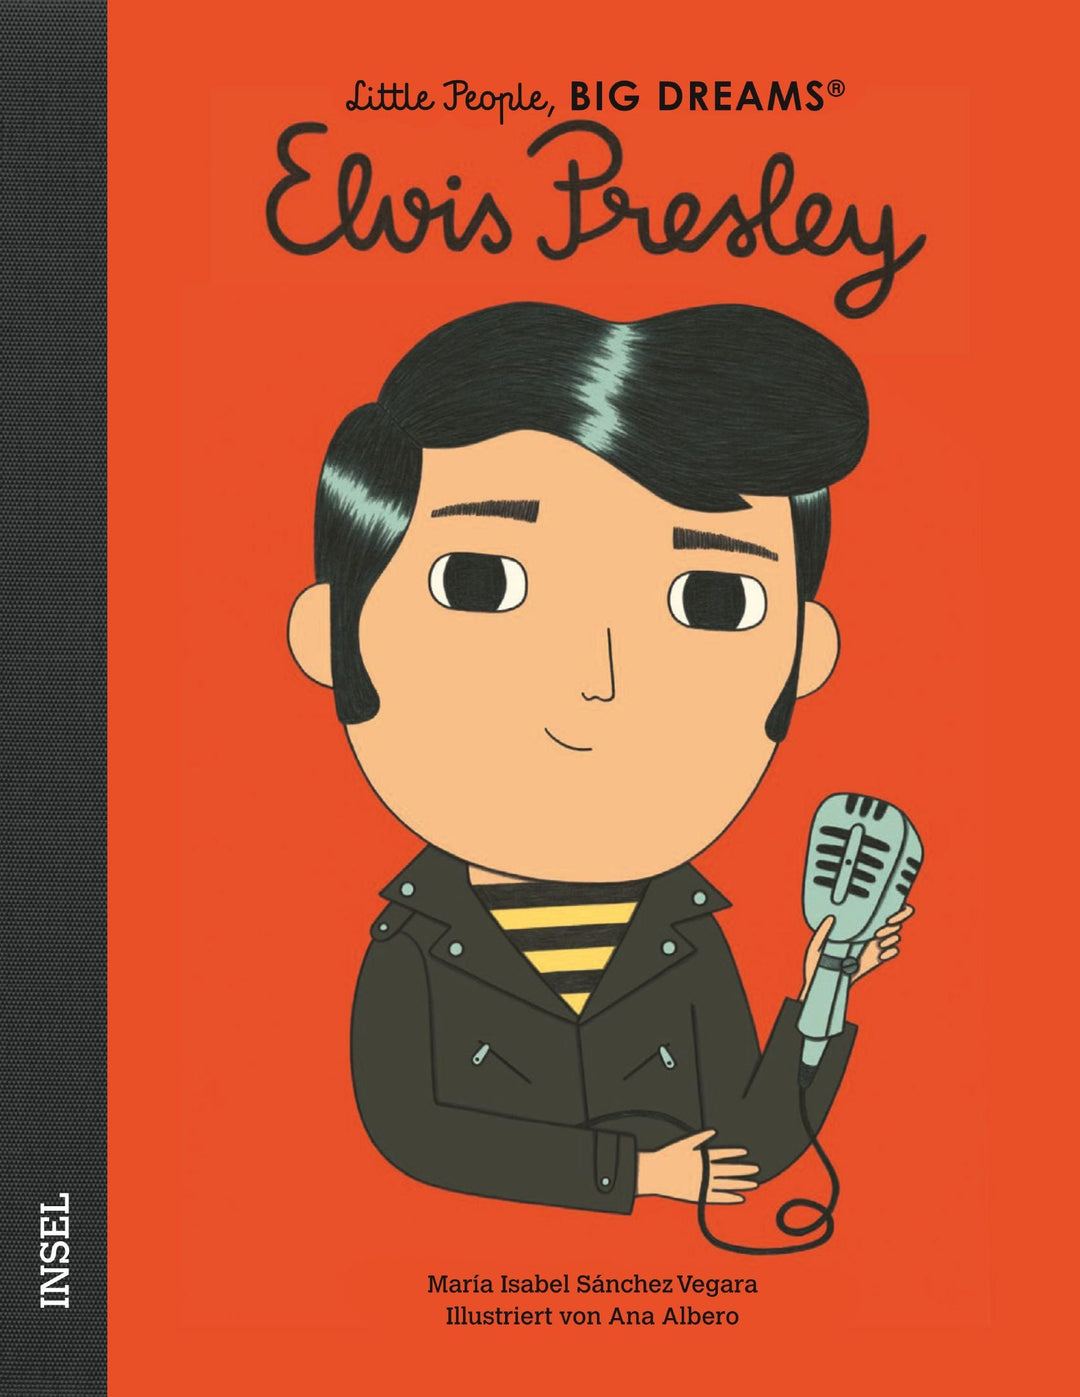 Insel Verlag Bilderbuch Little People, Big Dreams auf Deutsch: Elvis Presley